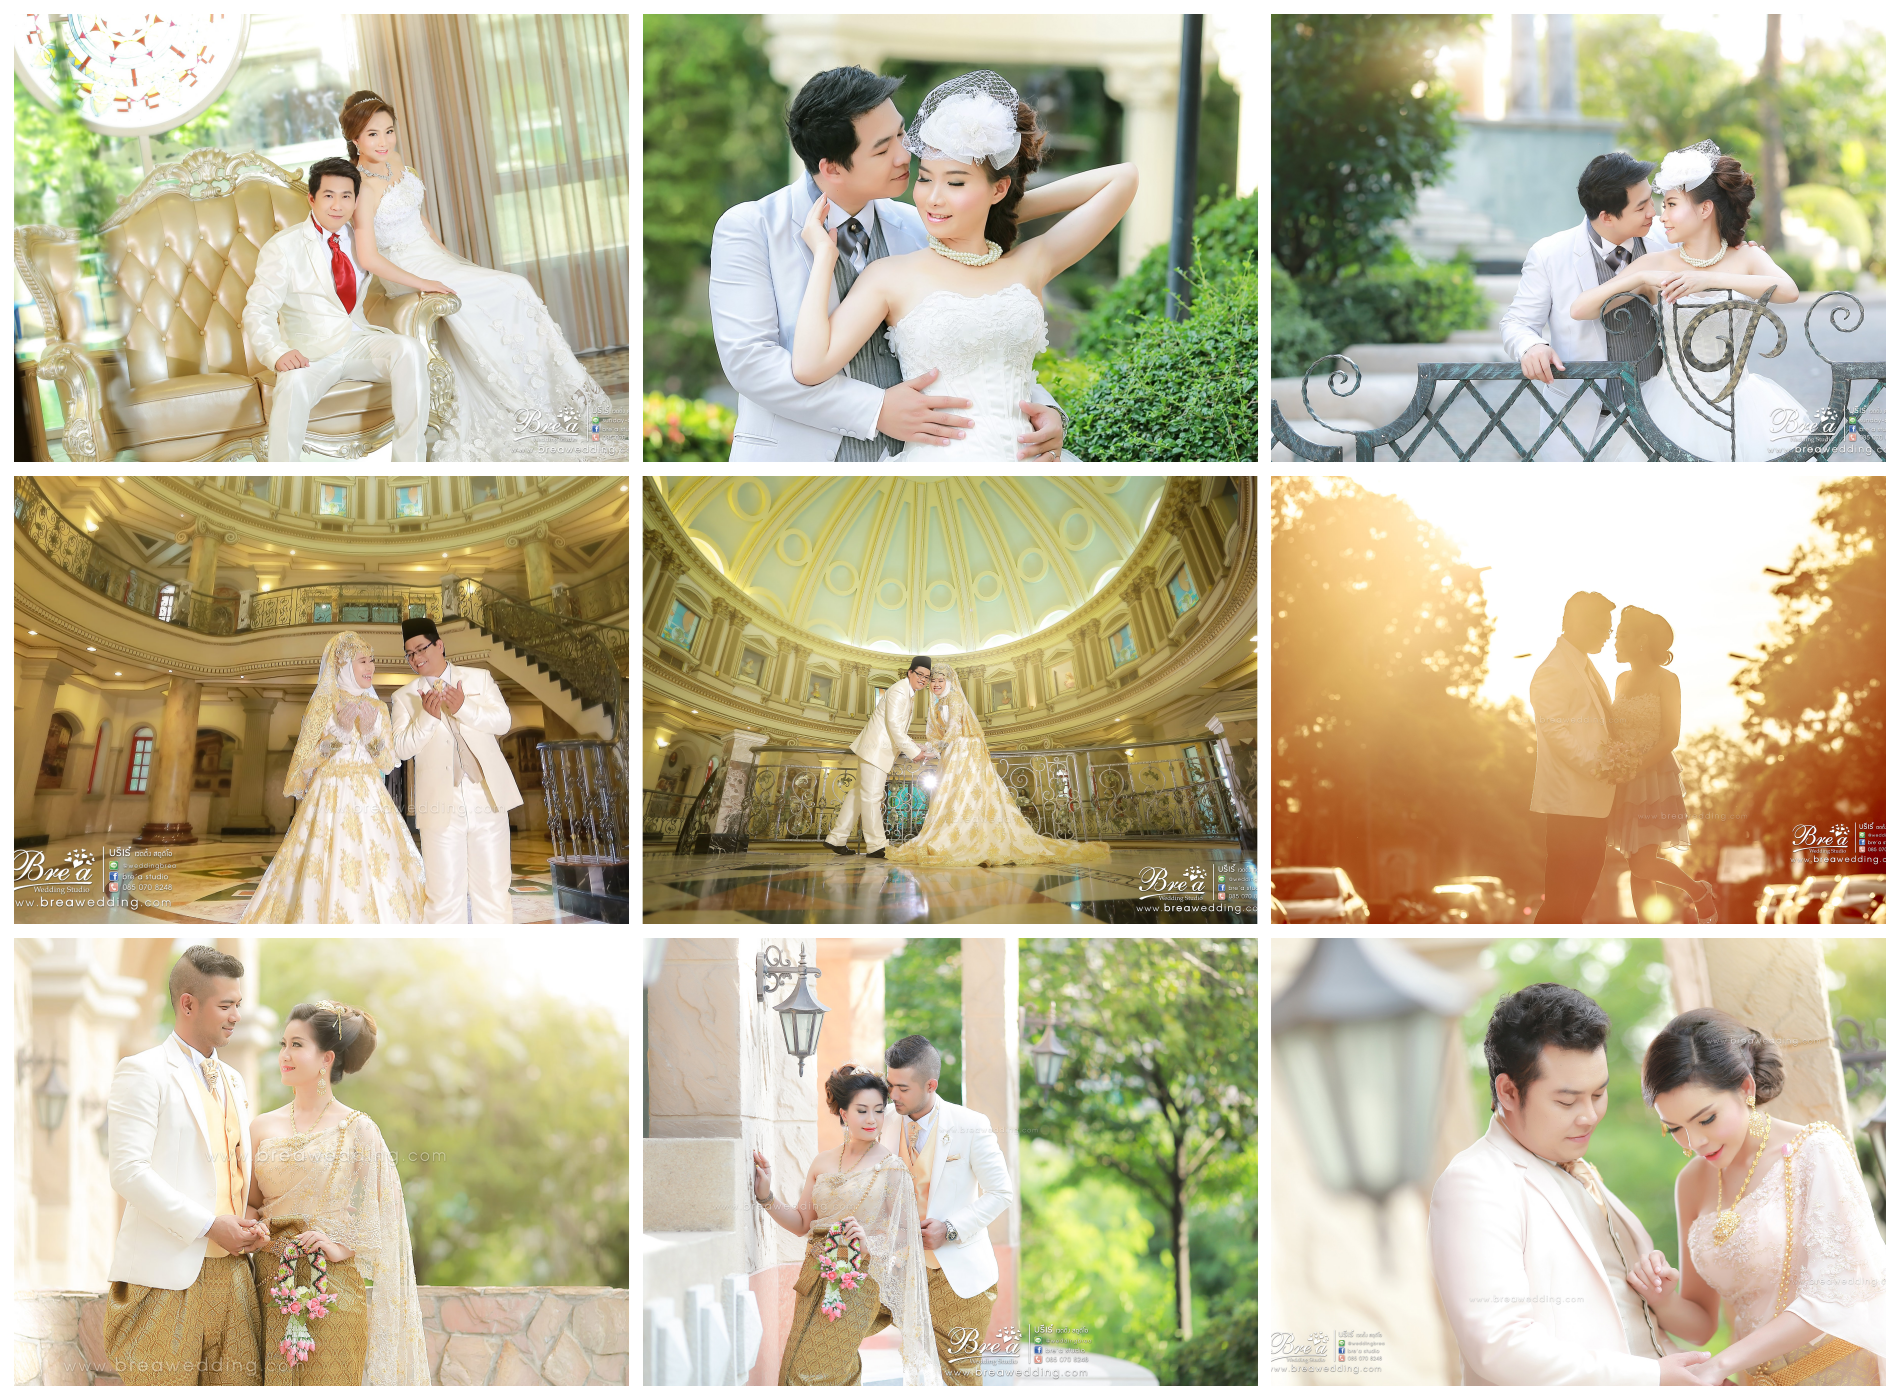 พรีเวดดิ้ง ฌ็องเซลิเซ่ ถ่ายรูปแต่งงาน ร้านเวดดิ้ง เช่าชุดแต่งงาน สถานที่ถ่ายรูปแต่งงานสวยๆ